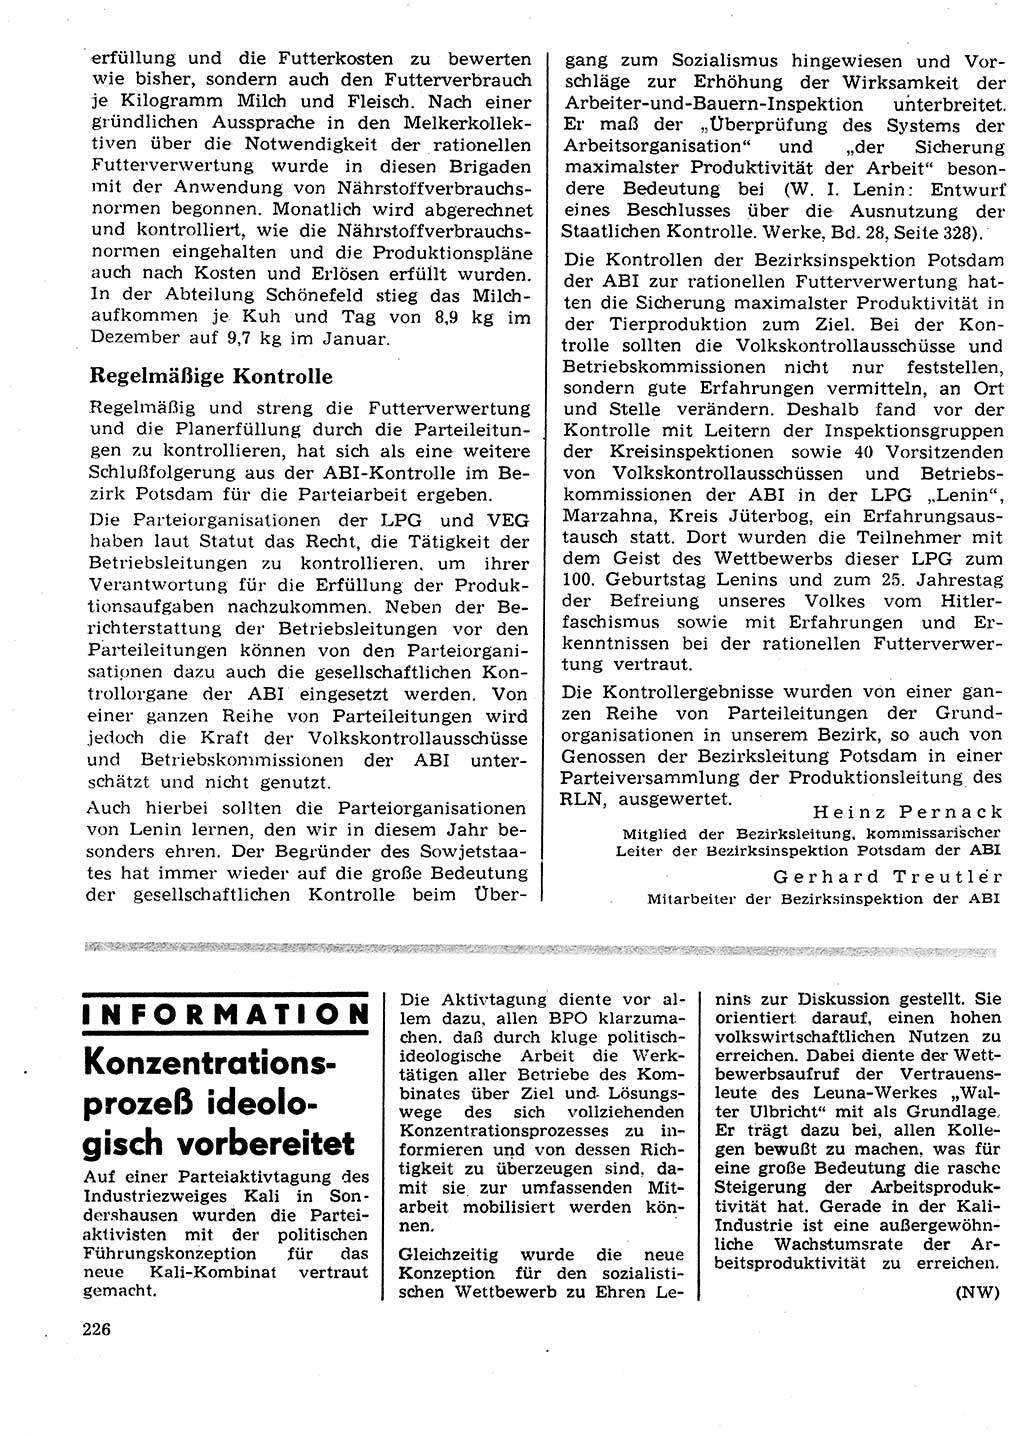 Neuer Weg (NW), Organ des Zentralkomitees (ZK) der SED (Sozialistische Einheitspartei Deutschlands) für Fragen des Parteilebens, 25. Jahrgang [Deutsche Demokratische Republik (DDR)] 1970, Seite 226 (NW ZK SED DDR 1970, S. 226)